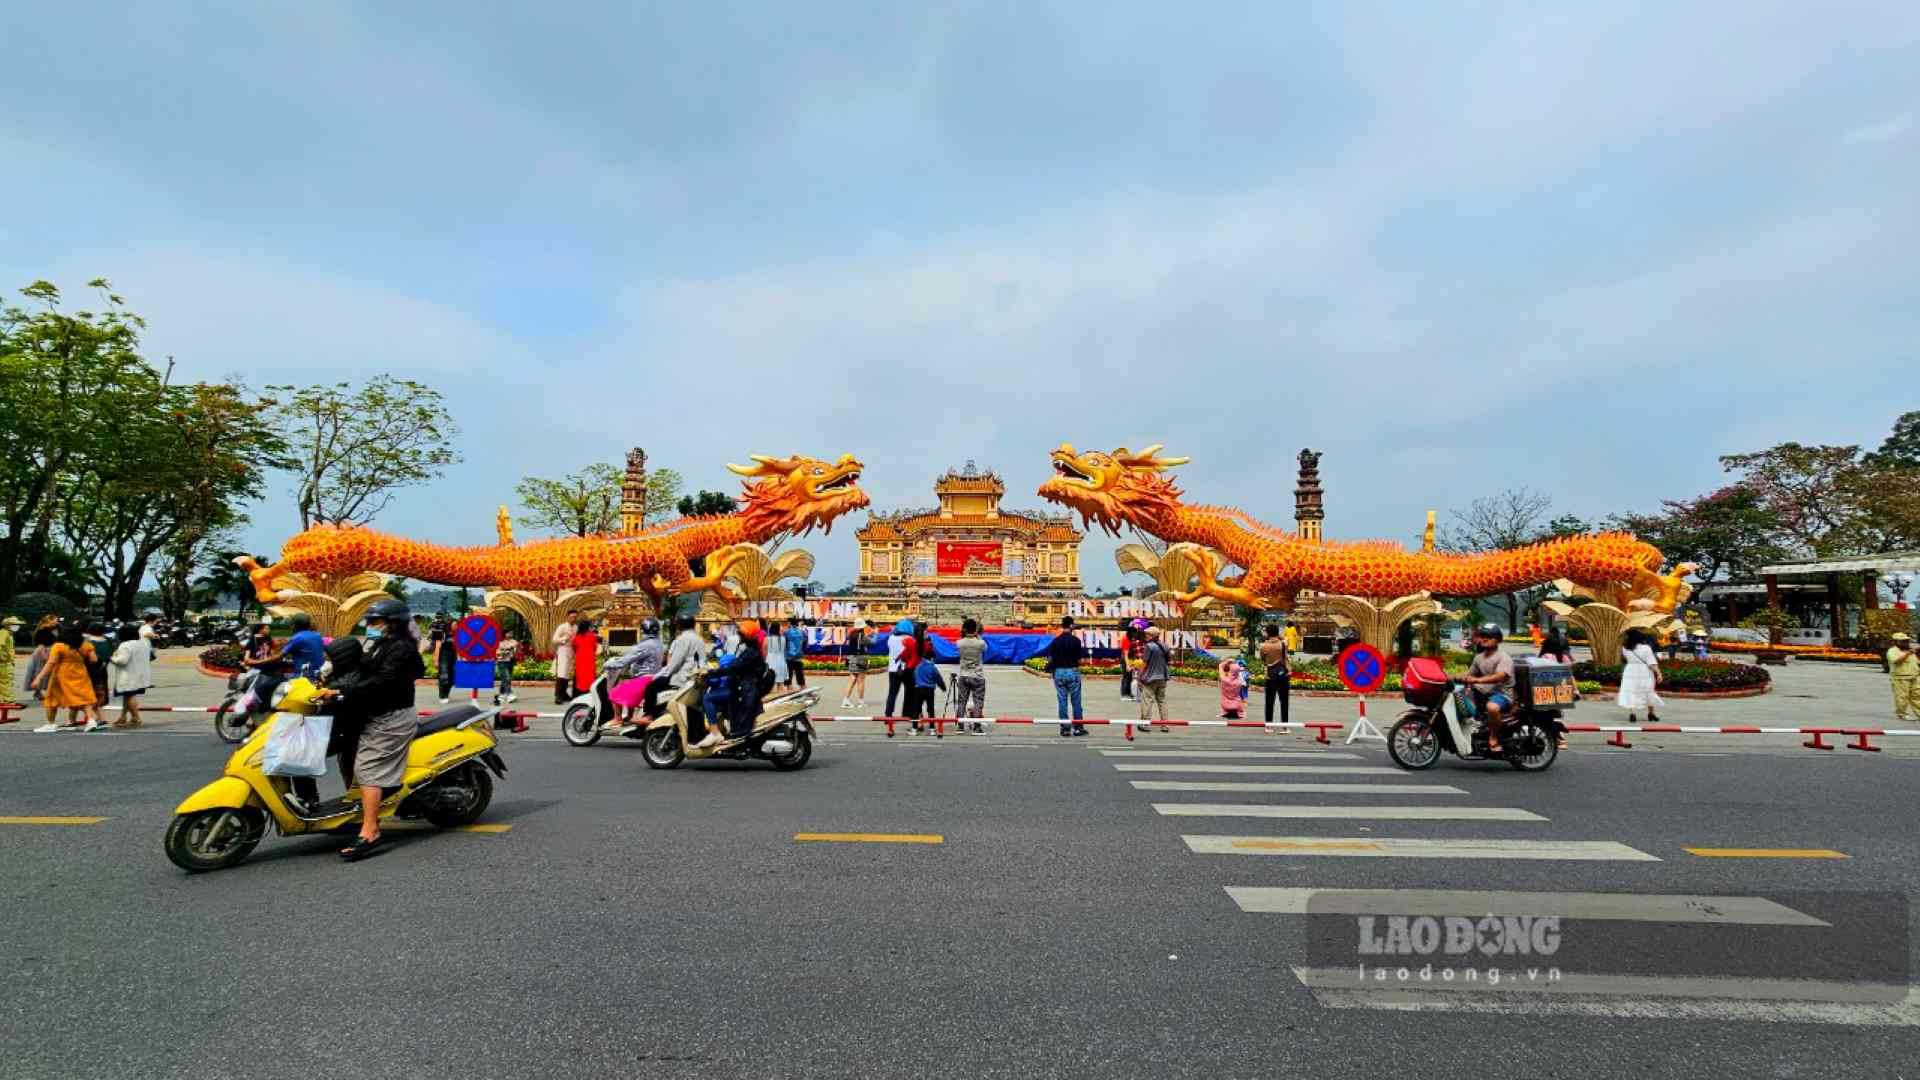 Theo đó, “song Long” khổng lồ có chiều dài hơn 30m và được đặt ở Đài tưởng niệm chiến sĩ trận vong (phía trước Trường THPT Chuyên Quốc học Huế).